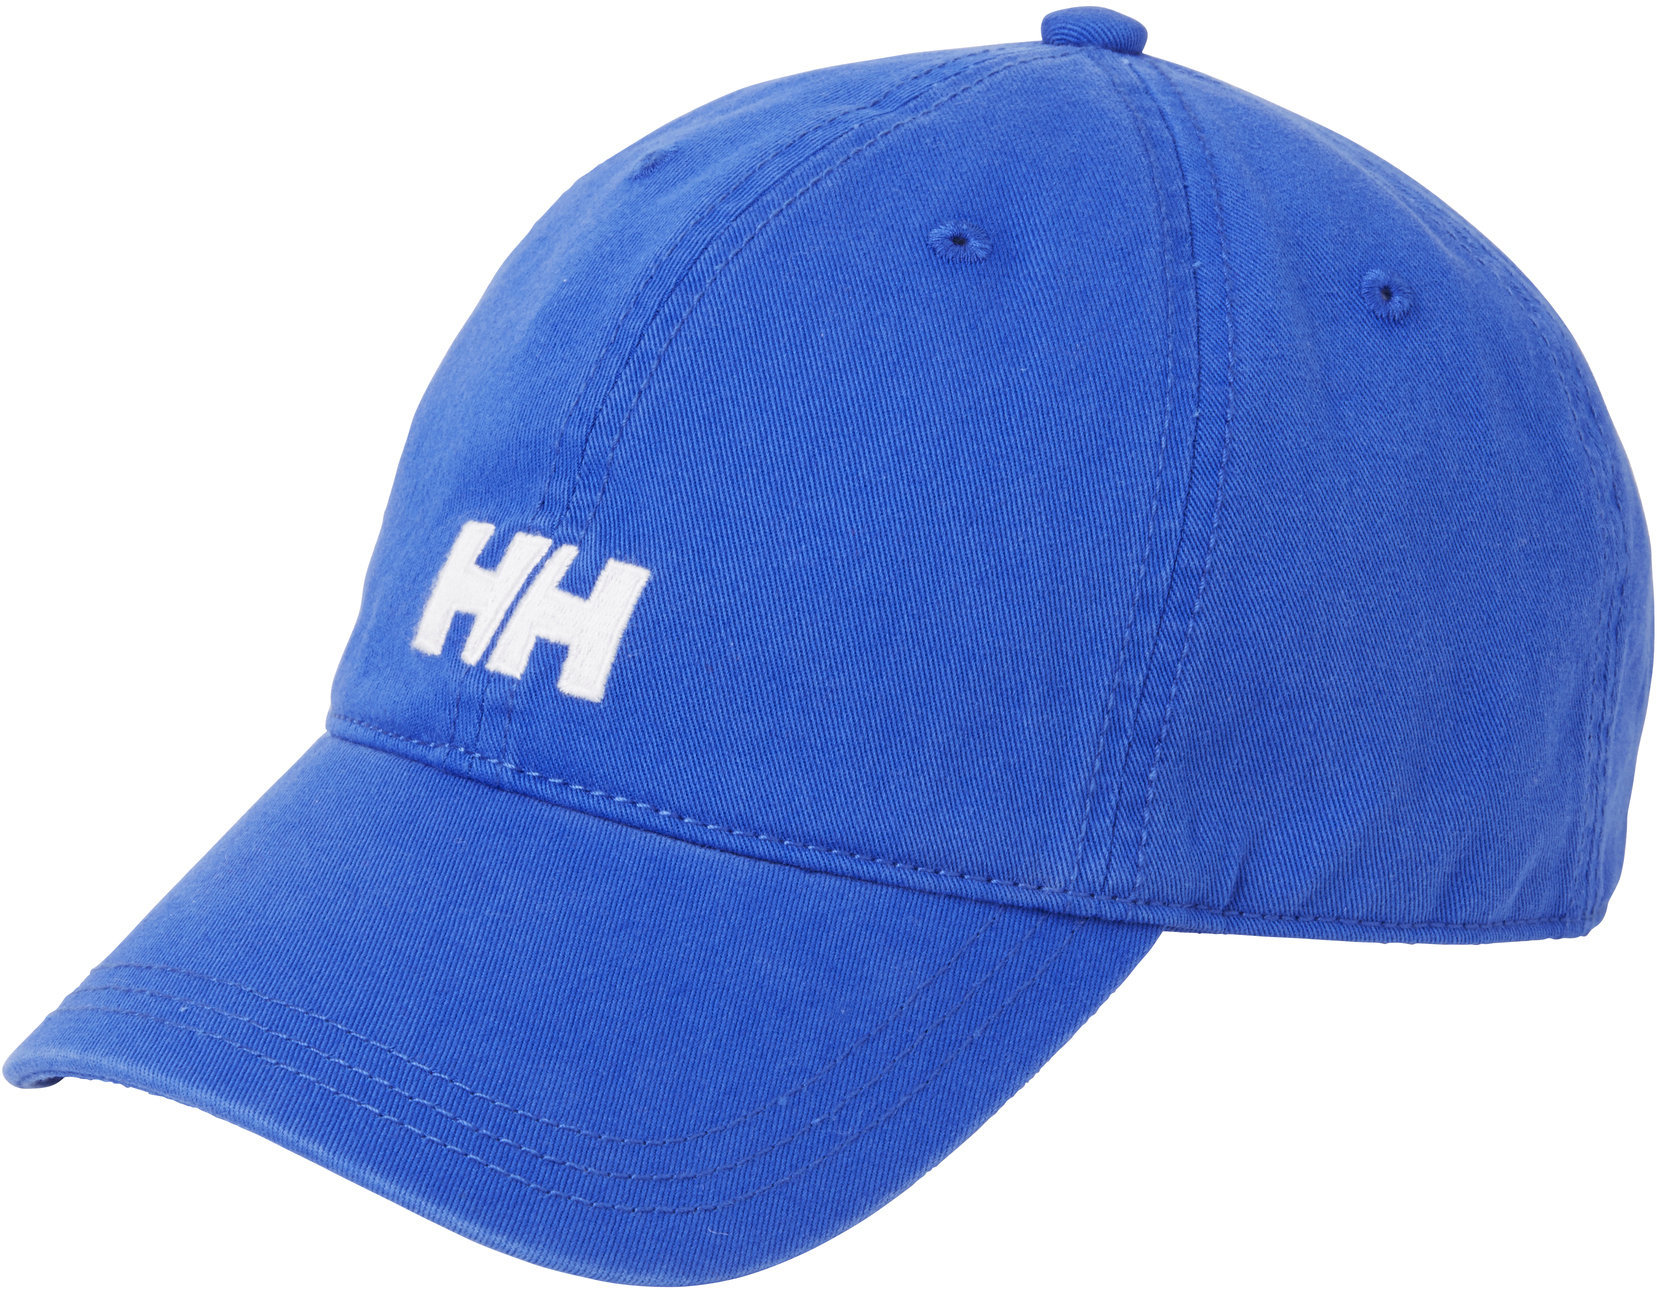 Καπέλο Ιστιοπλοΐας Helly Hansen Logo Cap Olympian Blue